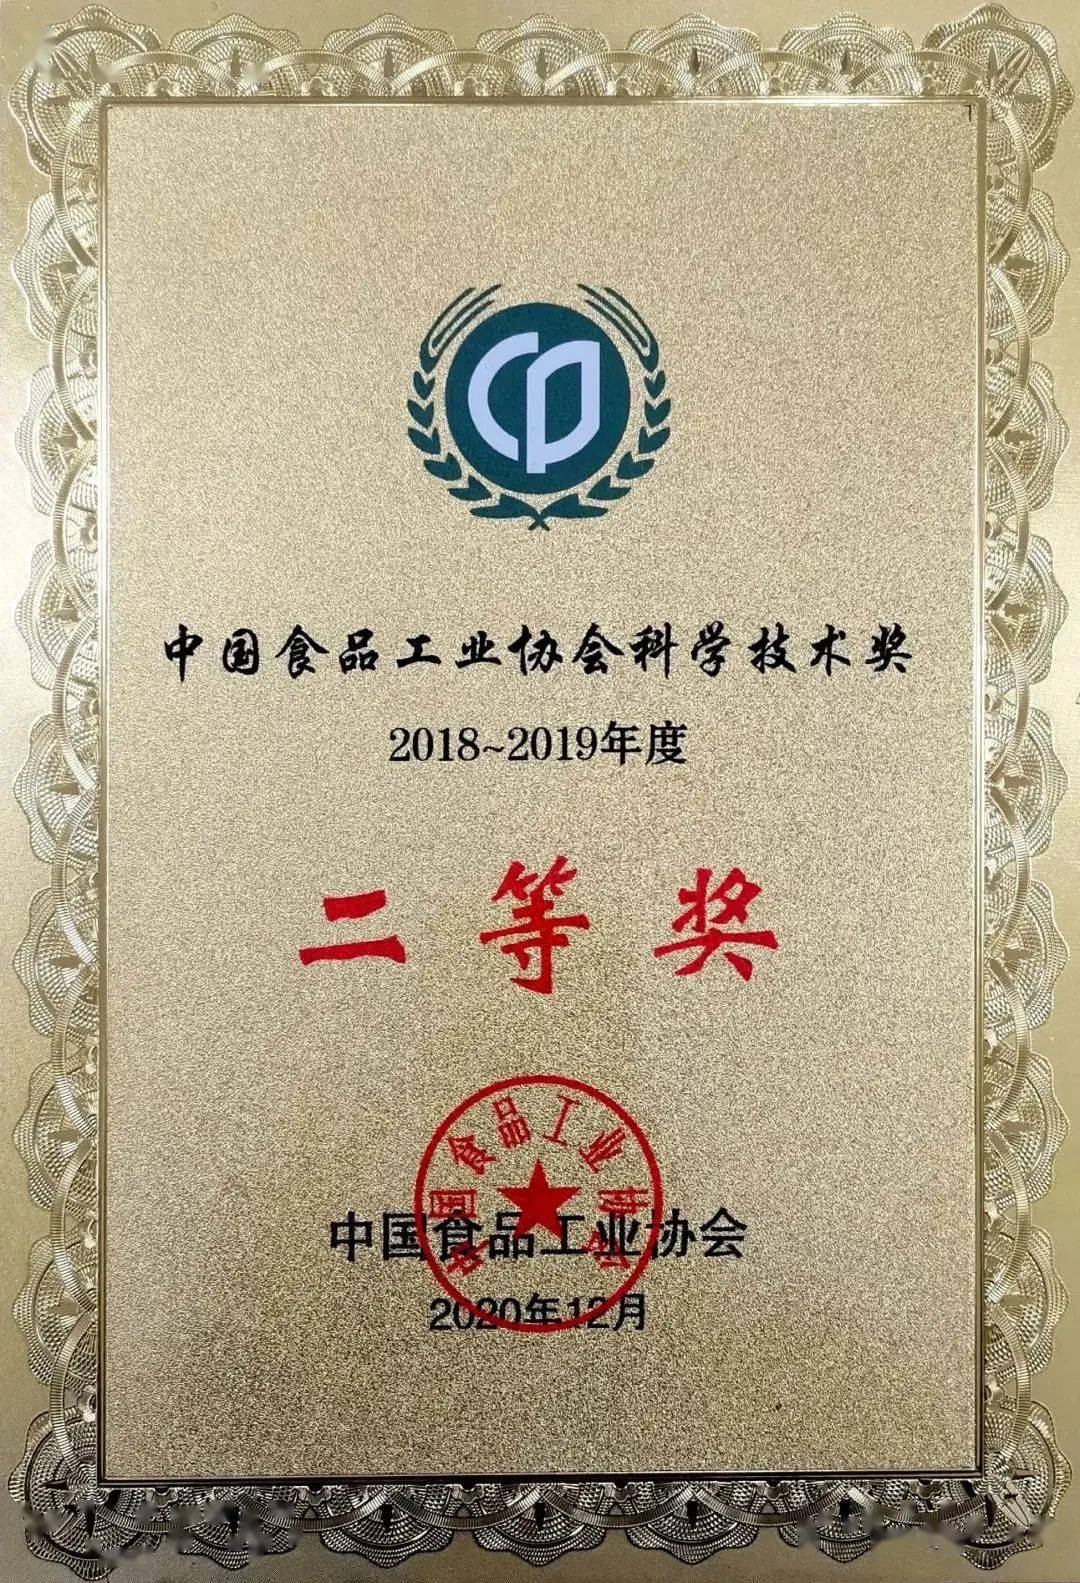 科研创新更上层楼黄鹤楼酒业获中国食品工业协会科学技术奖